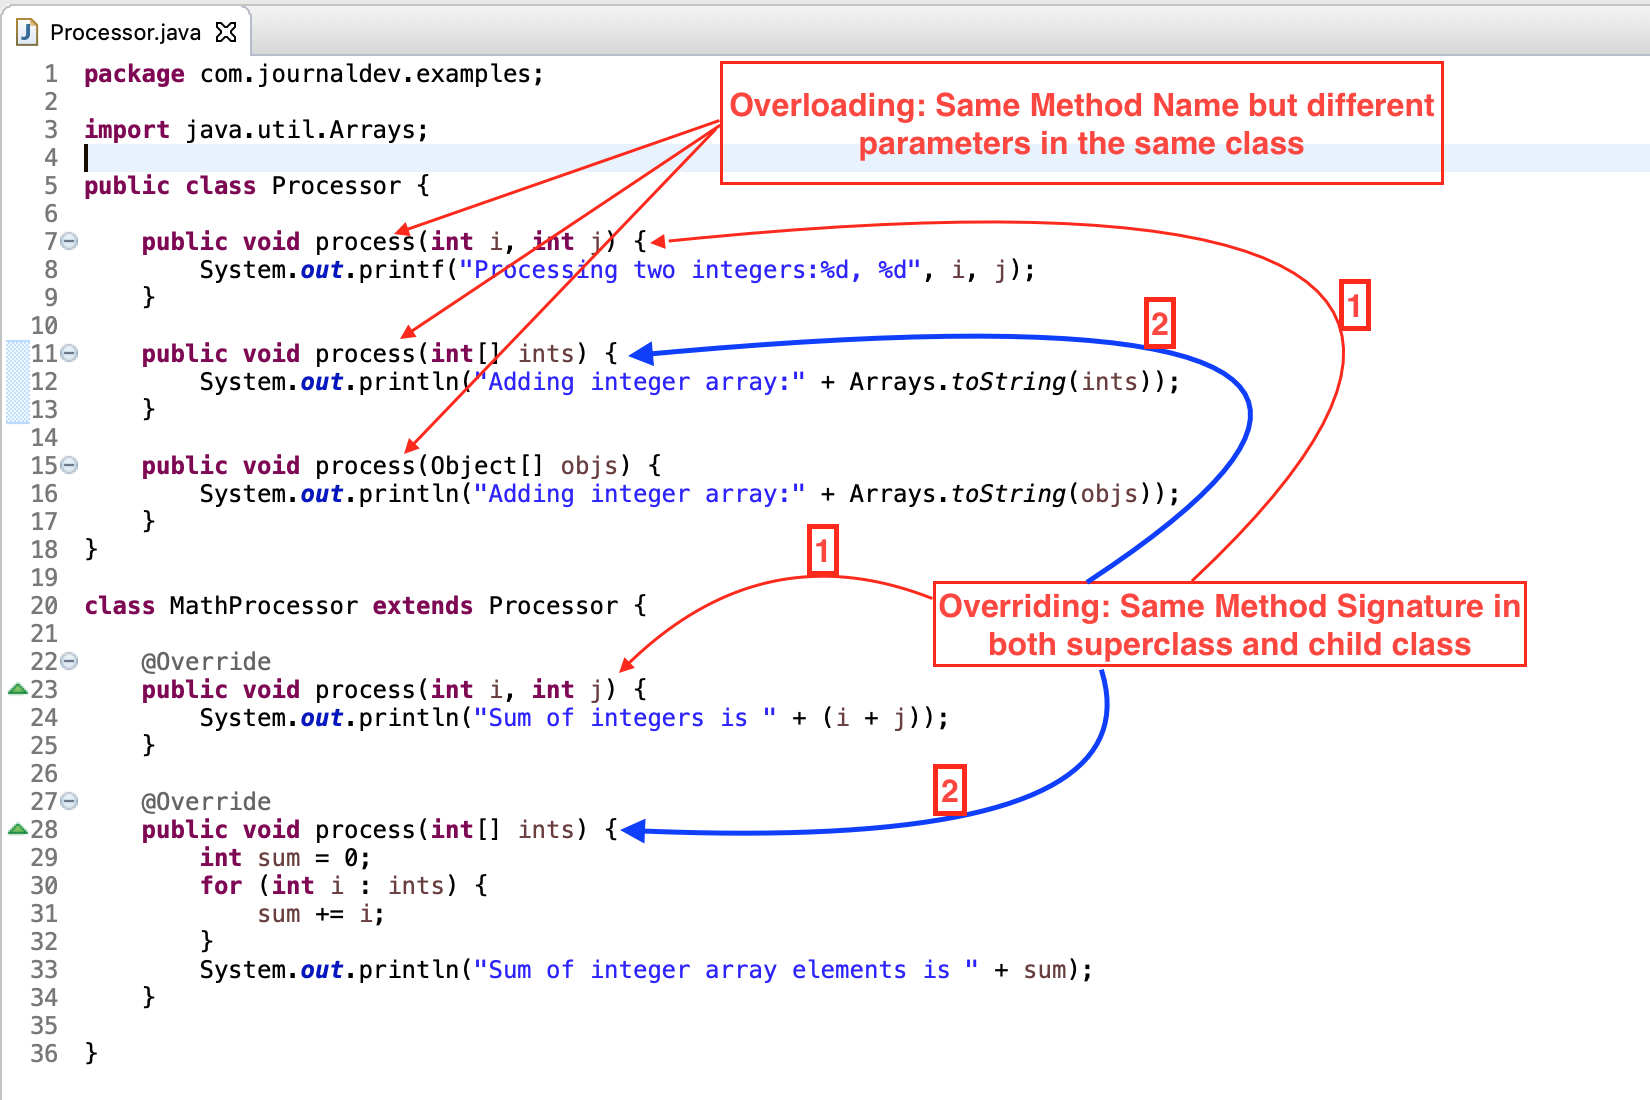 Overriding versus overloading in Java